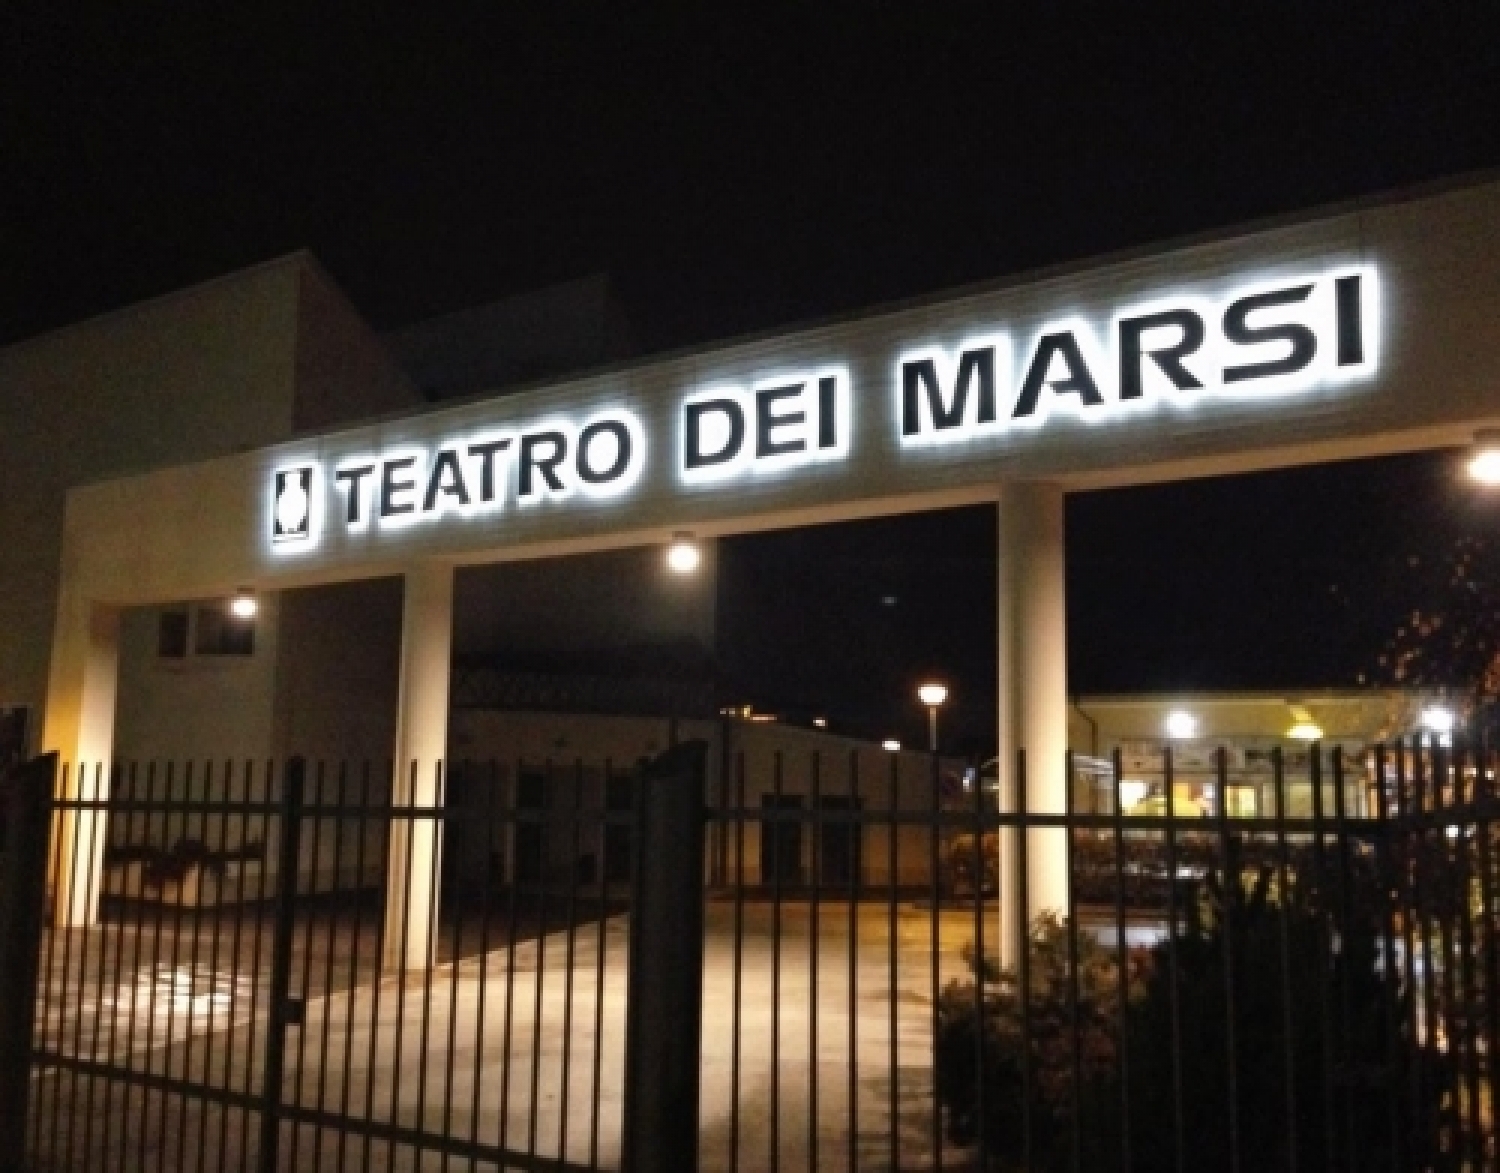 Teatro dei Marsi.jpg